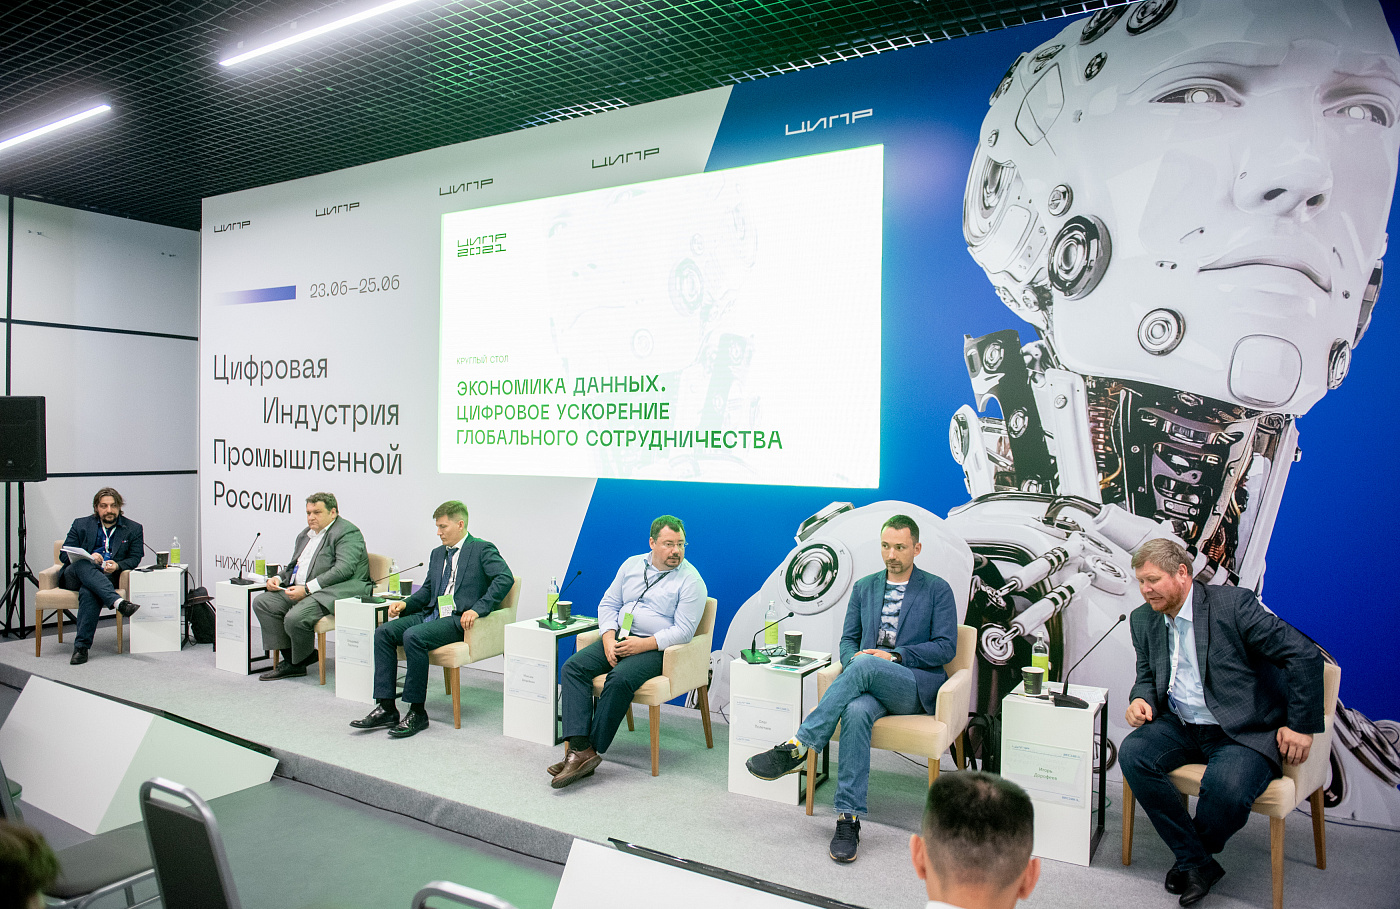 Конференция Цифровая индустрия промышленной России